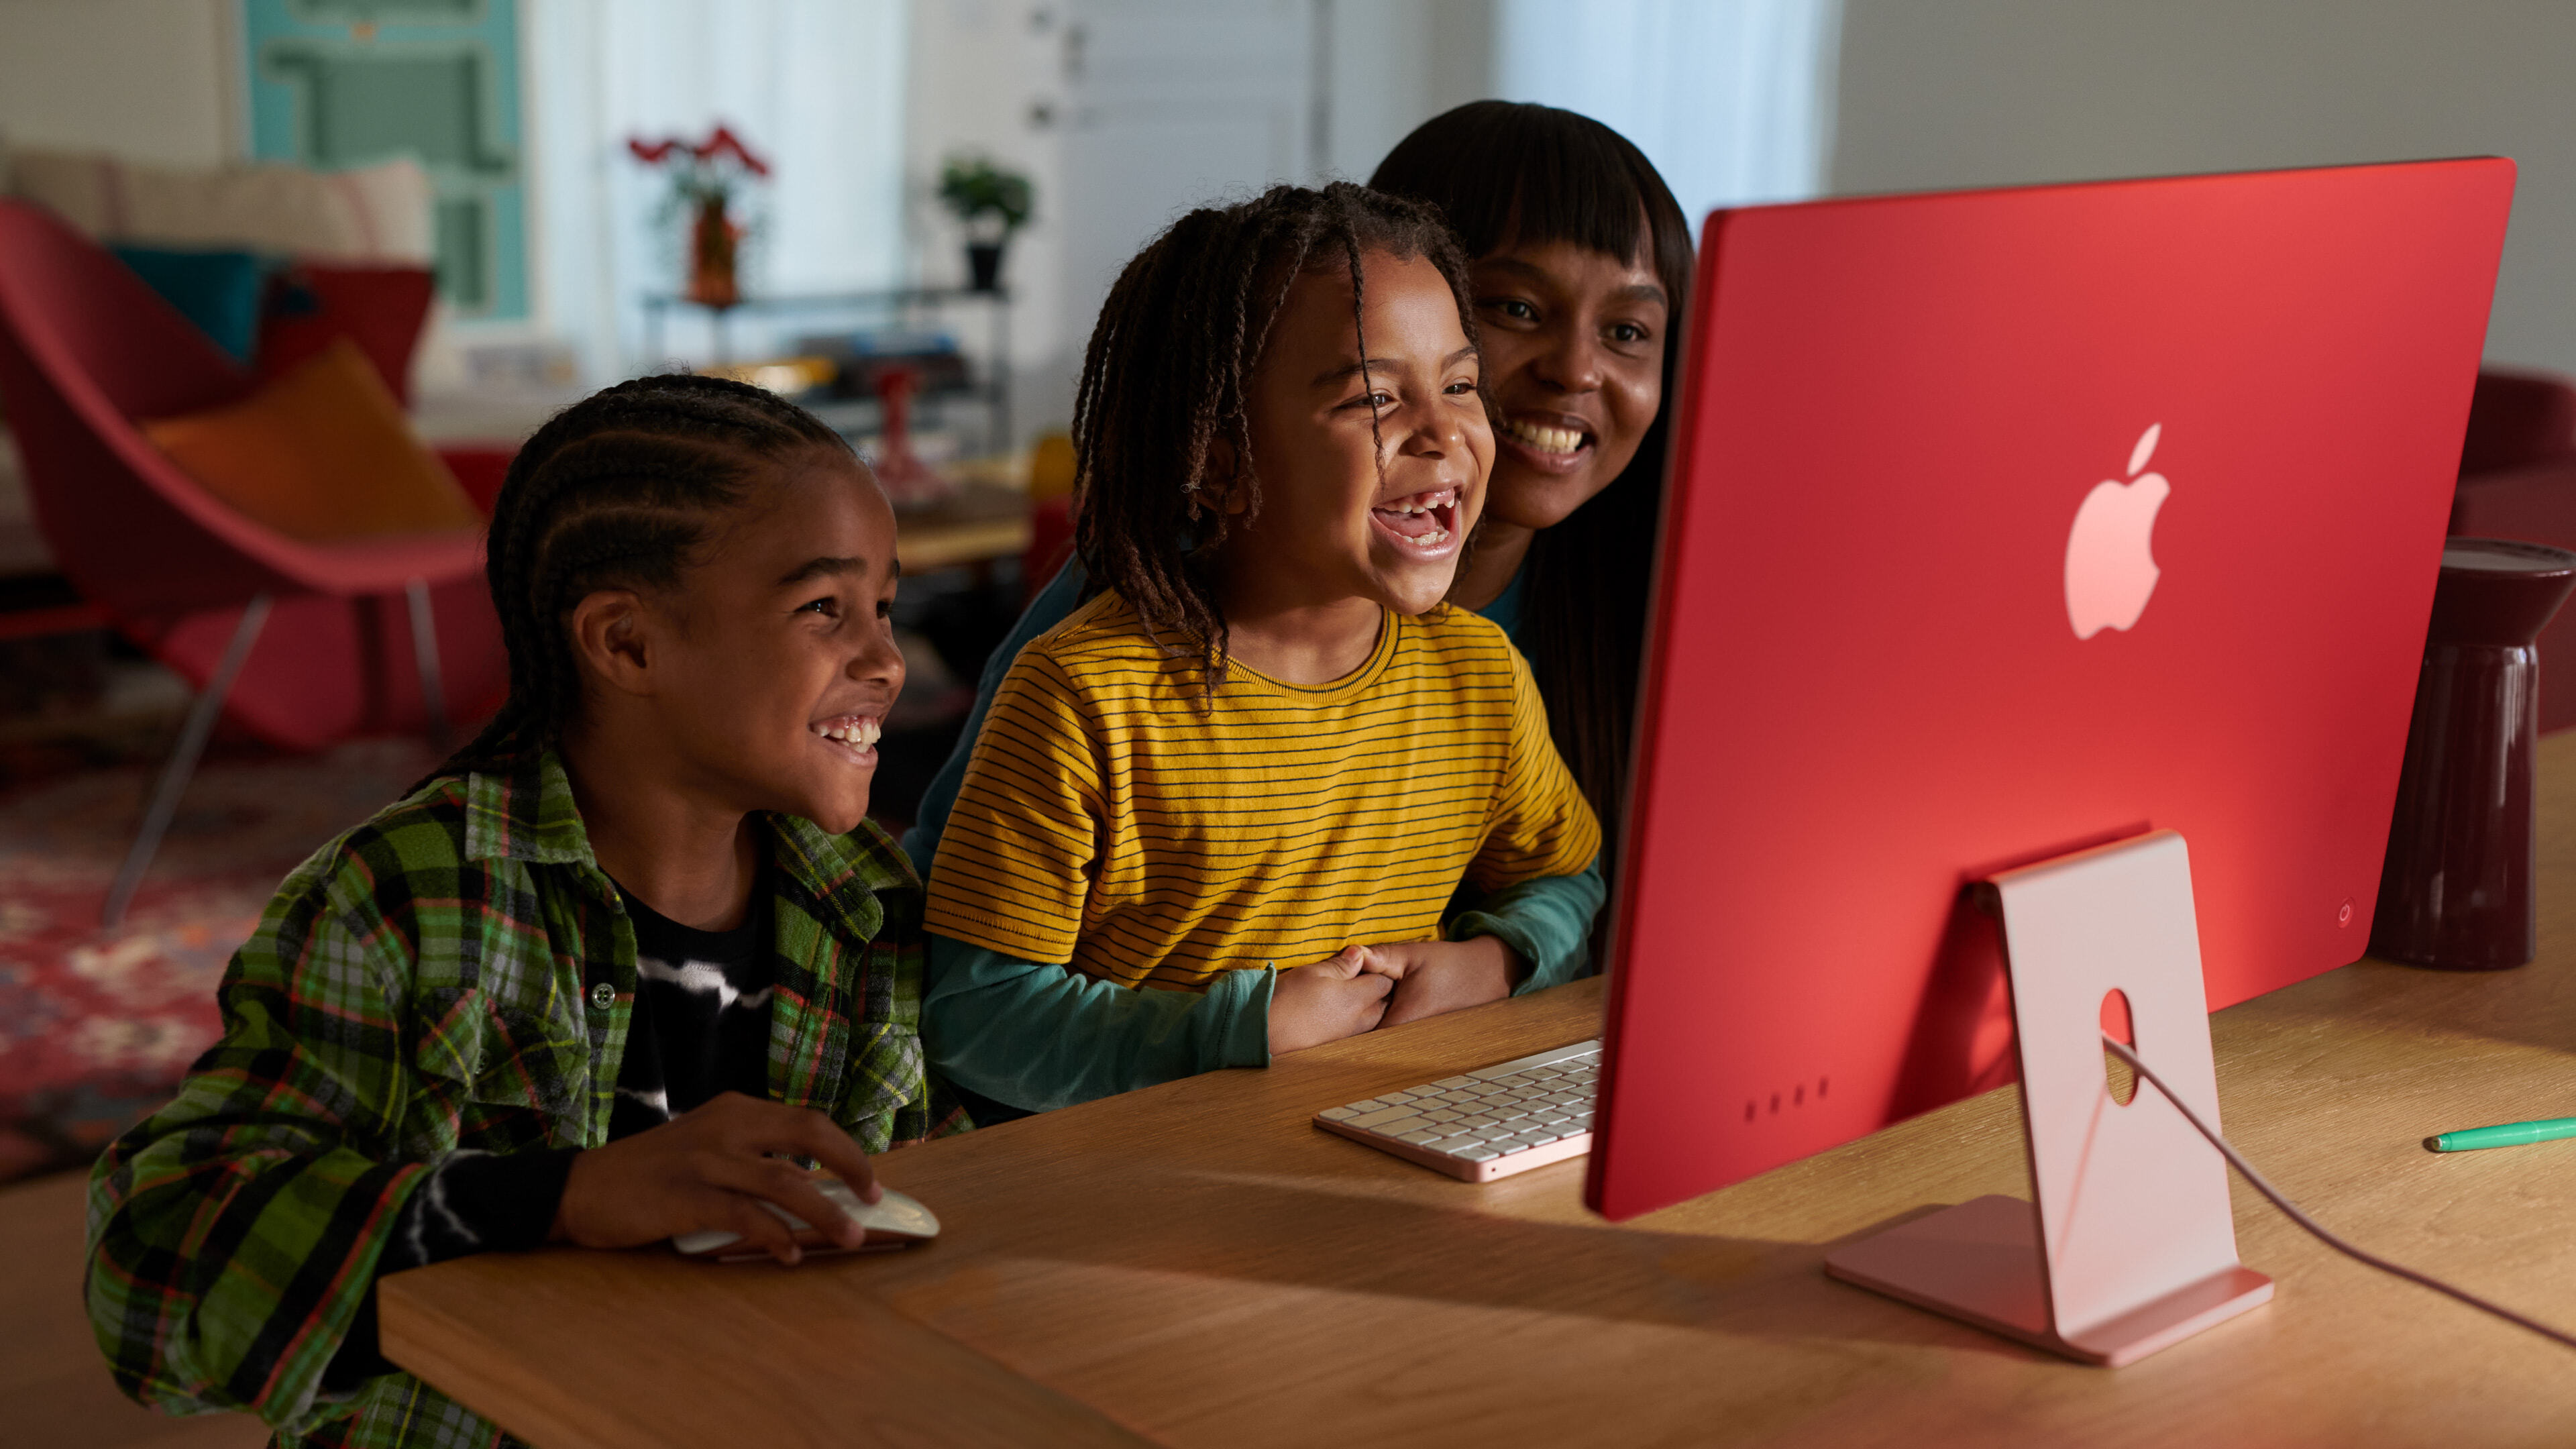 從家庭到小型企業，再到有志的創意工作者，以及學生和遊戲玩家，每個人都能得益於搭載 M3 的全新 iMac 所帶來的更優質效能與功能。